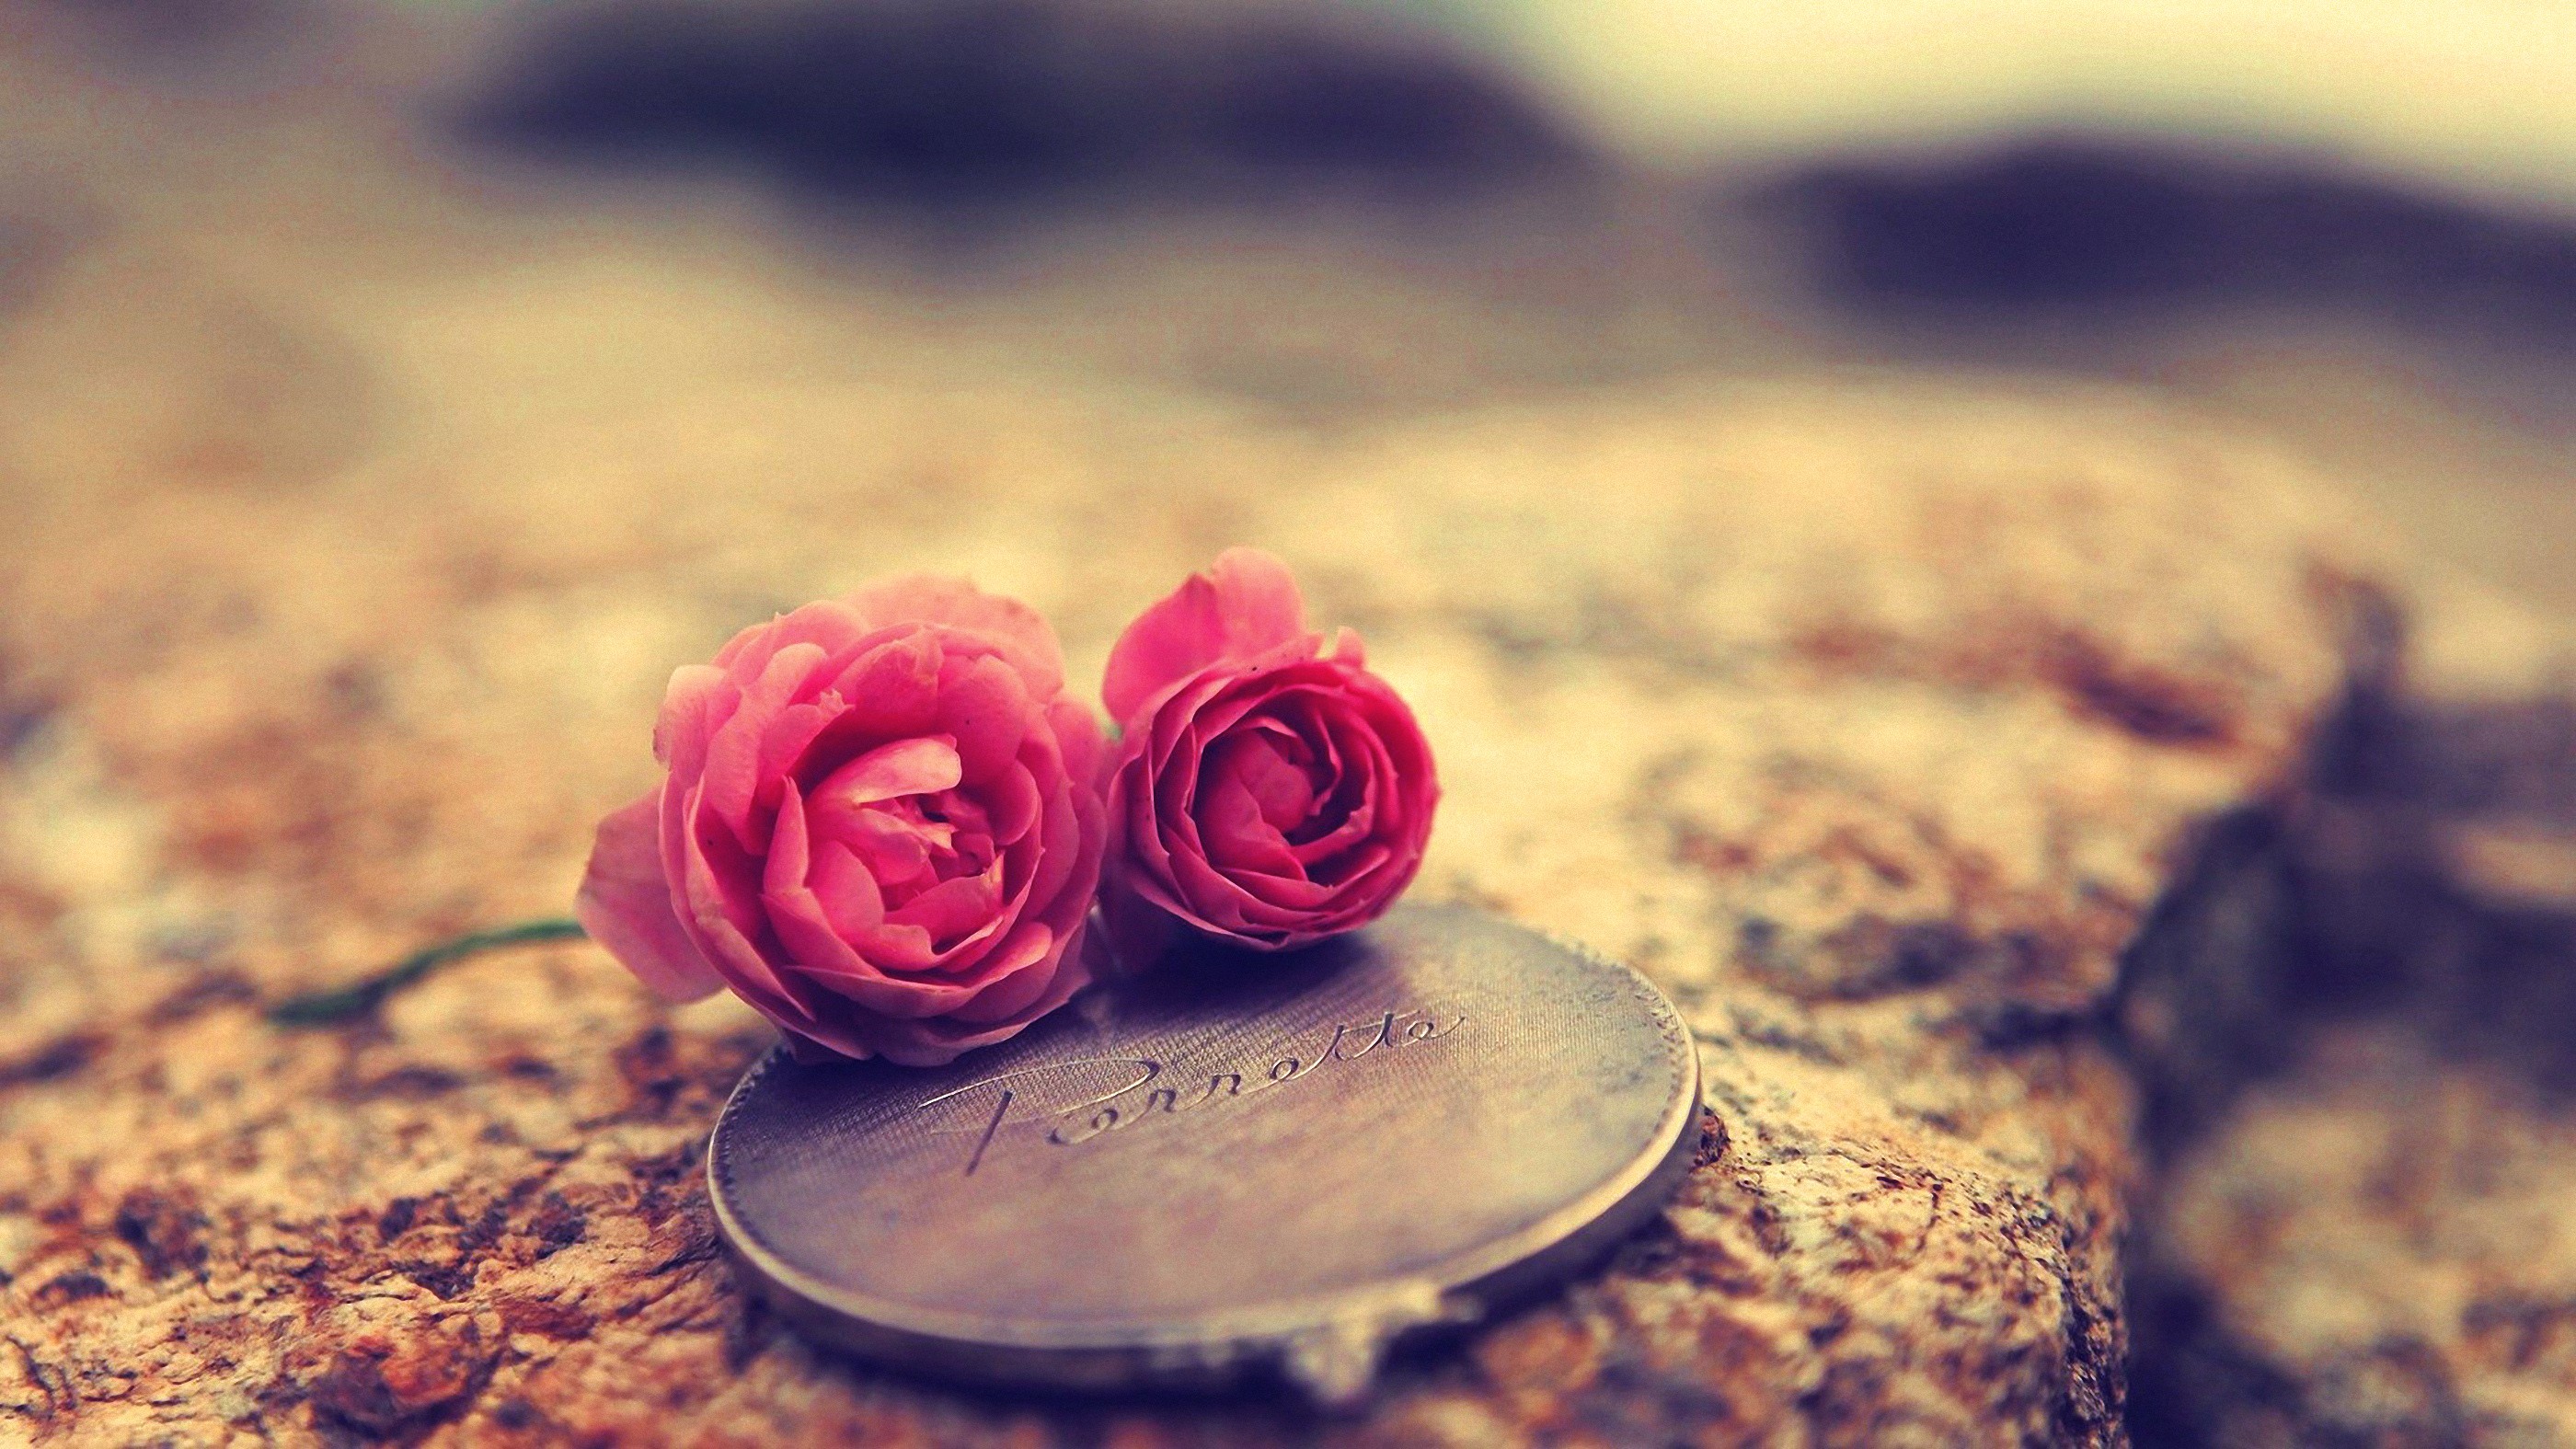 Rose Love Flowers Medallion 2800x1575